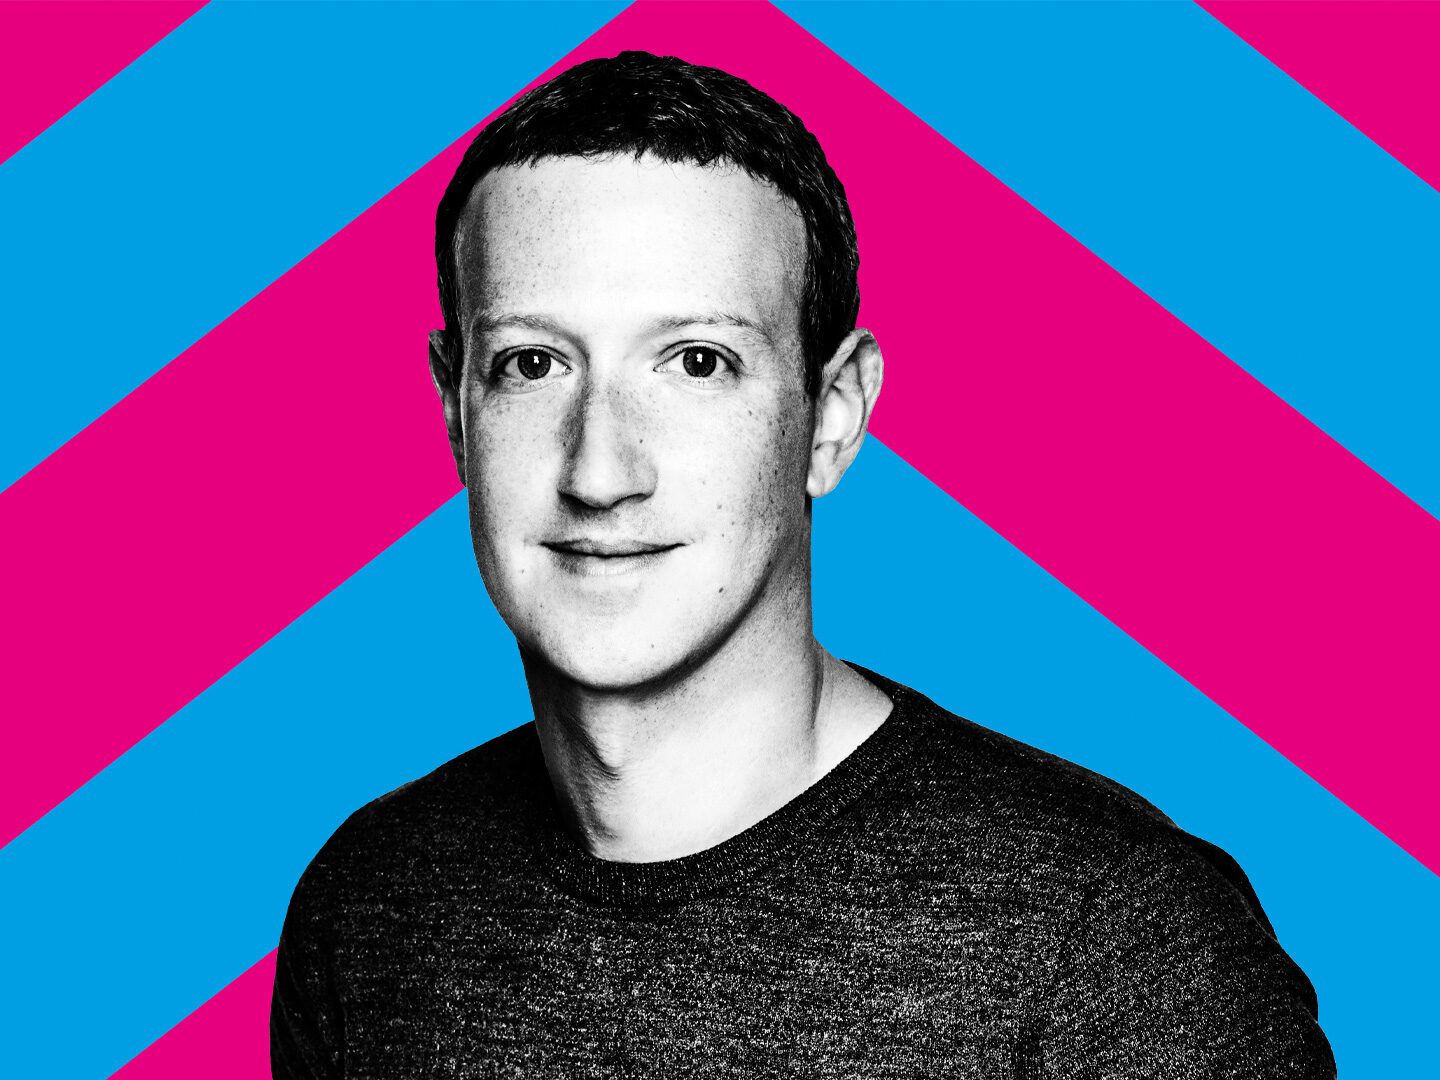 Portraitfoto von Meta-Chef Mark Zuckerberg in schwarz-weiß vor einem blau-pinken Hintergrund.